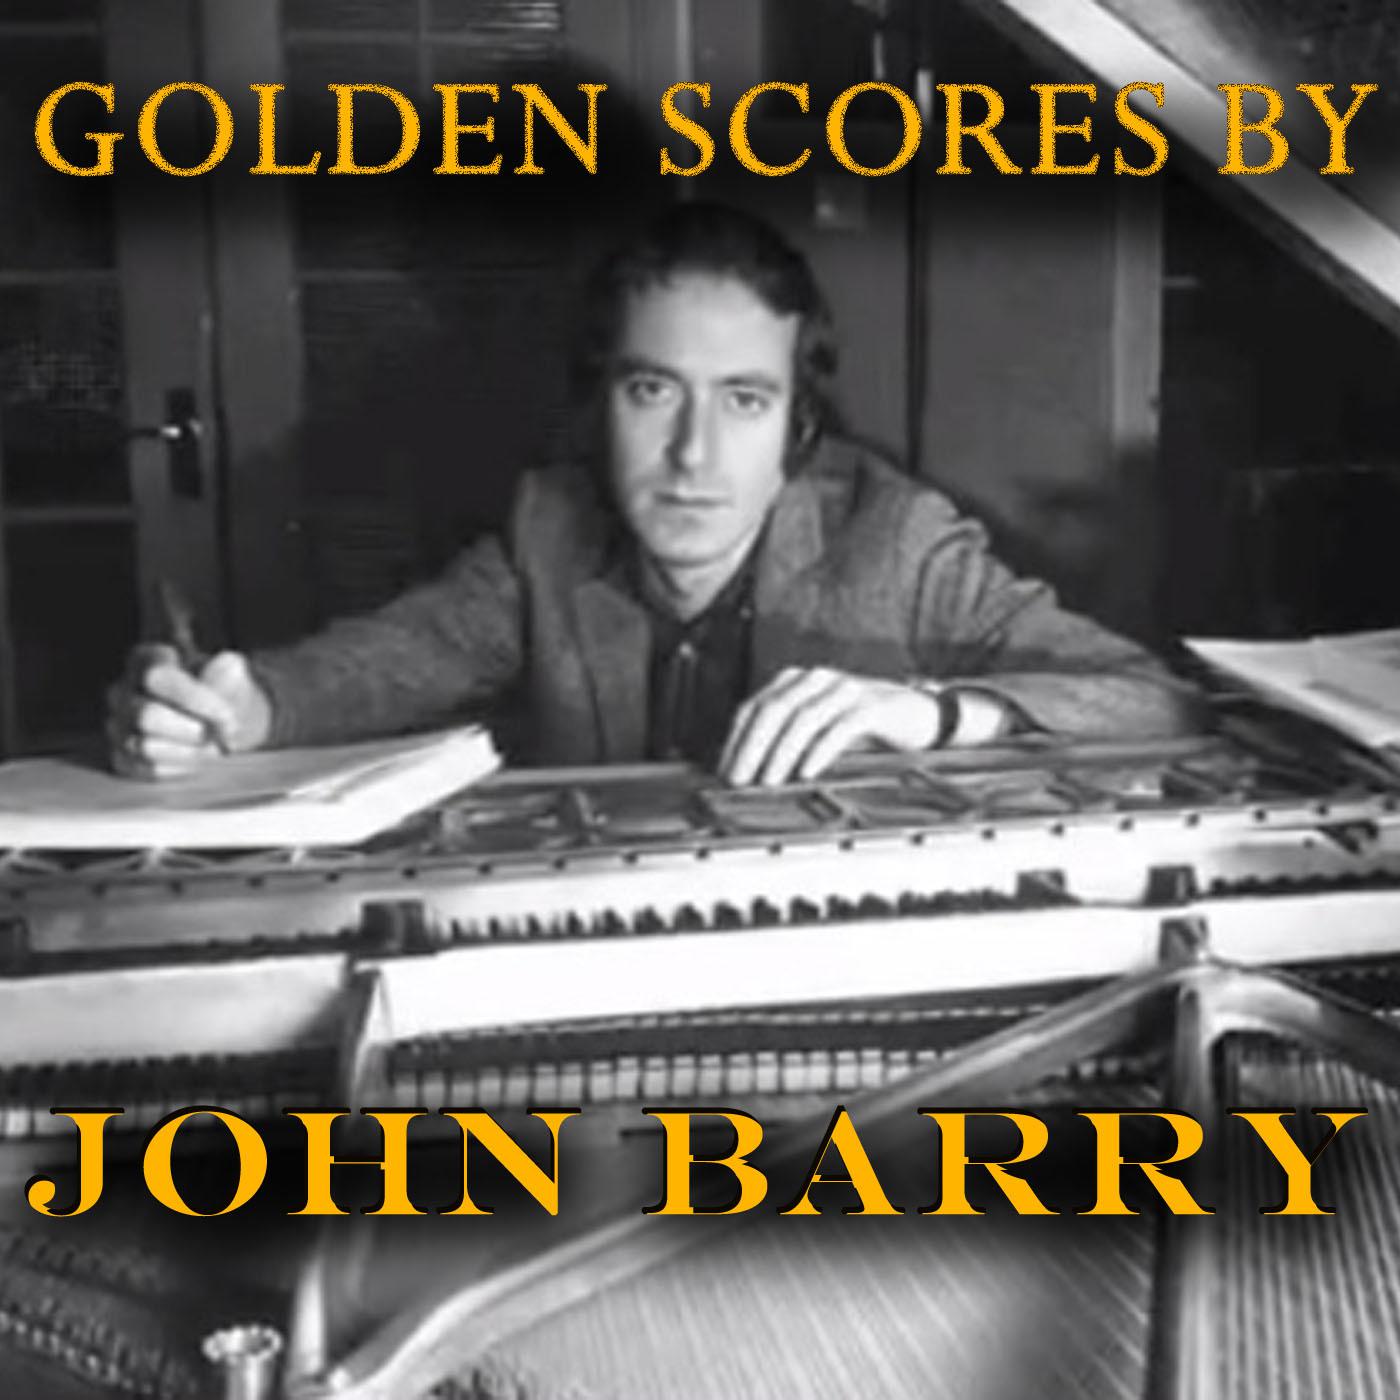 Golden Scores by John Barry